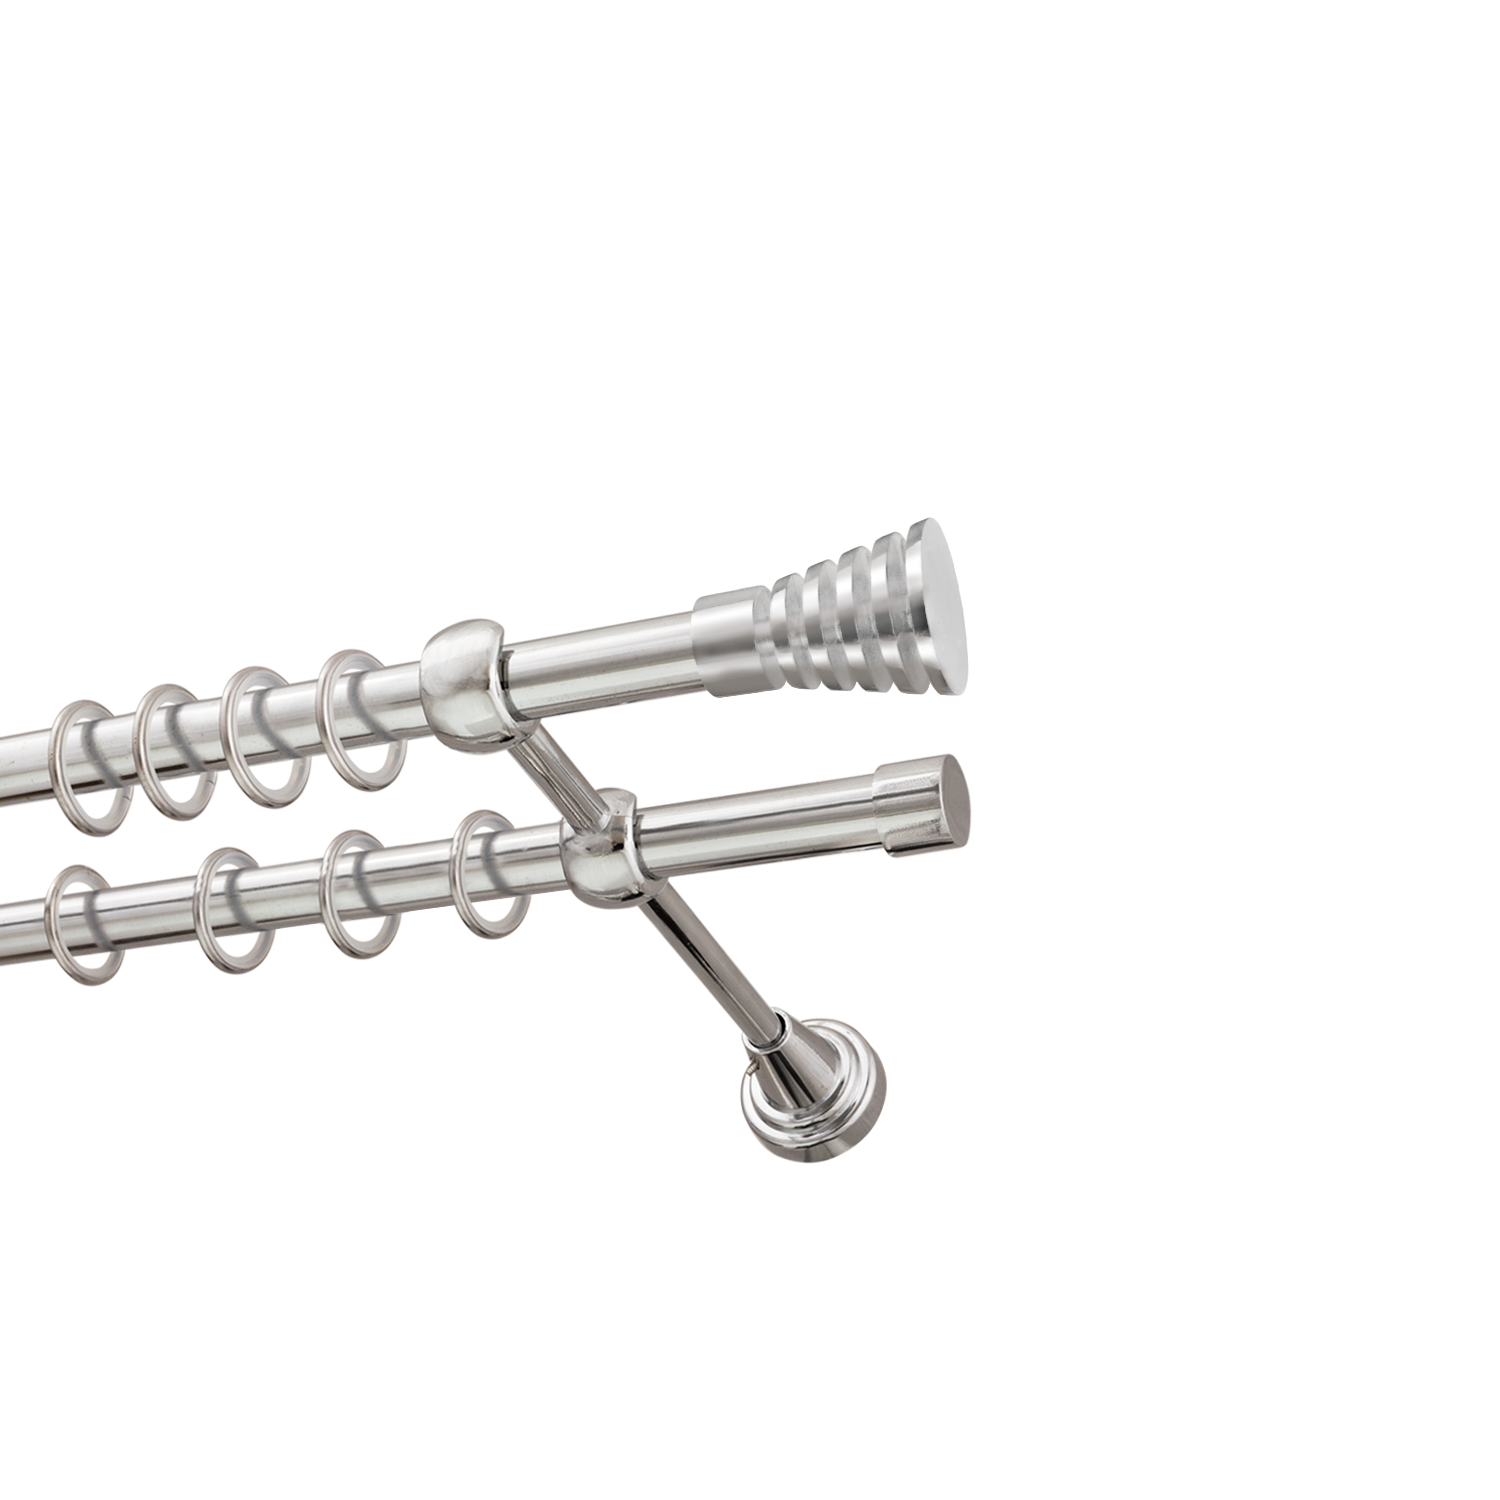 Металлический карниз для штор Верона, двухрядный 16/16 мм, серебро, гладкая штанга, длина 160 см